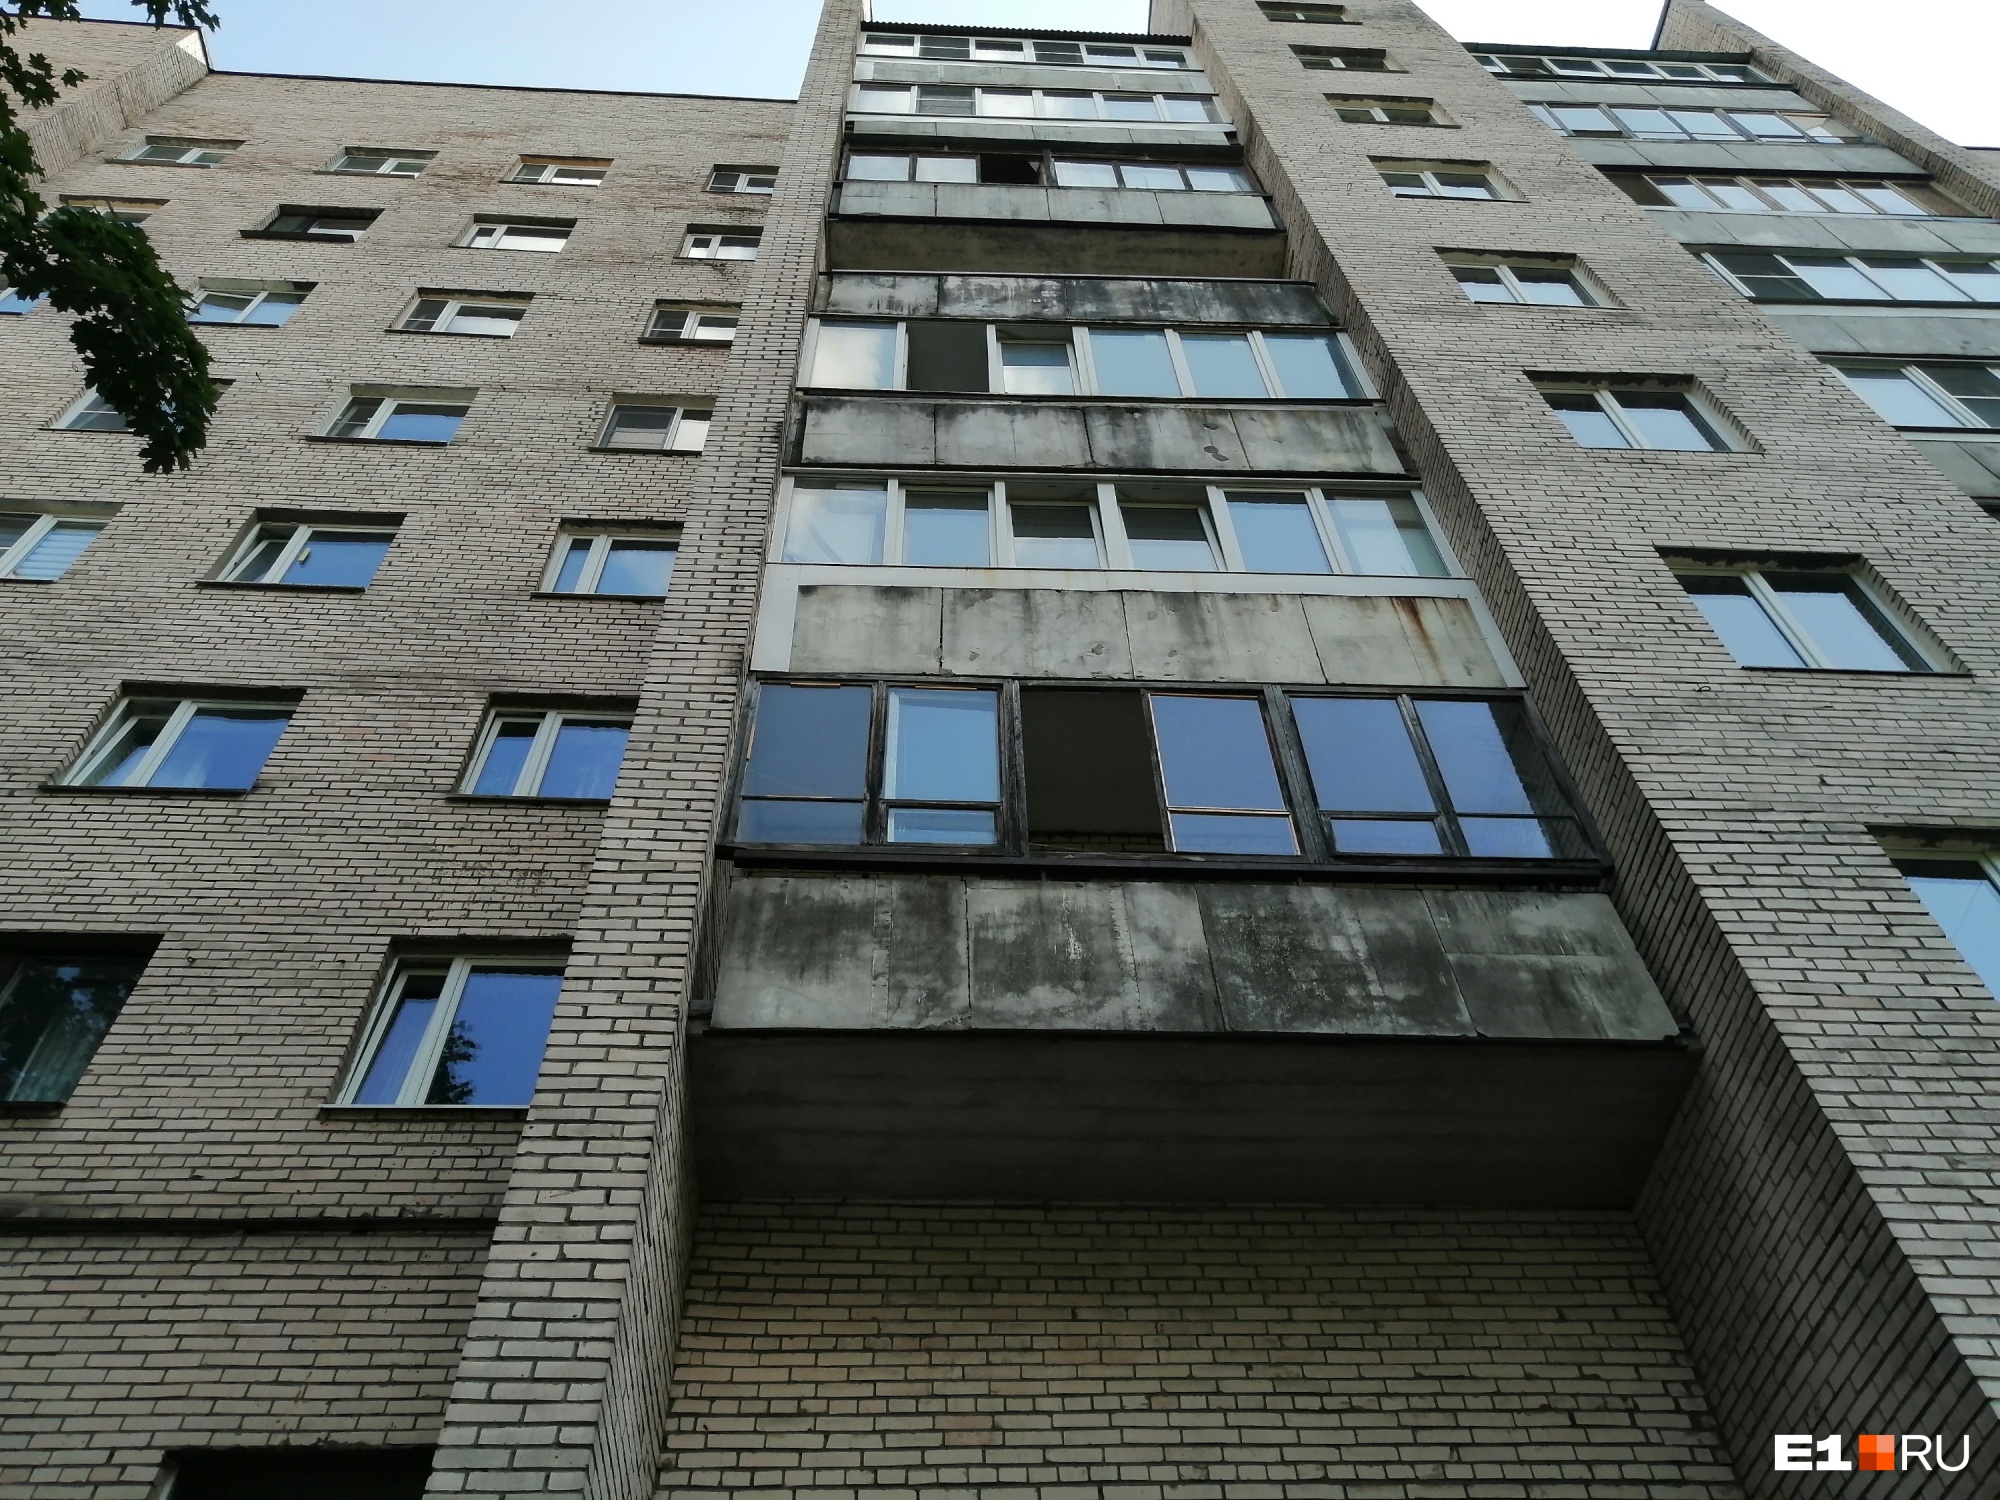 Кирпичная многоэтажка в спальном районе Петербурга, здесь жила Екатерина